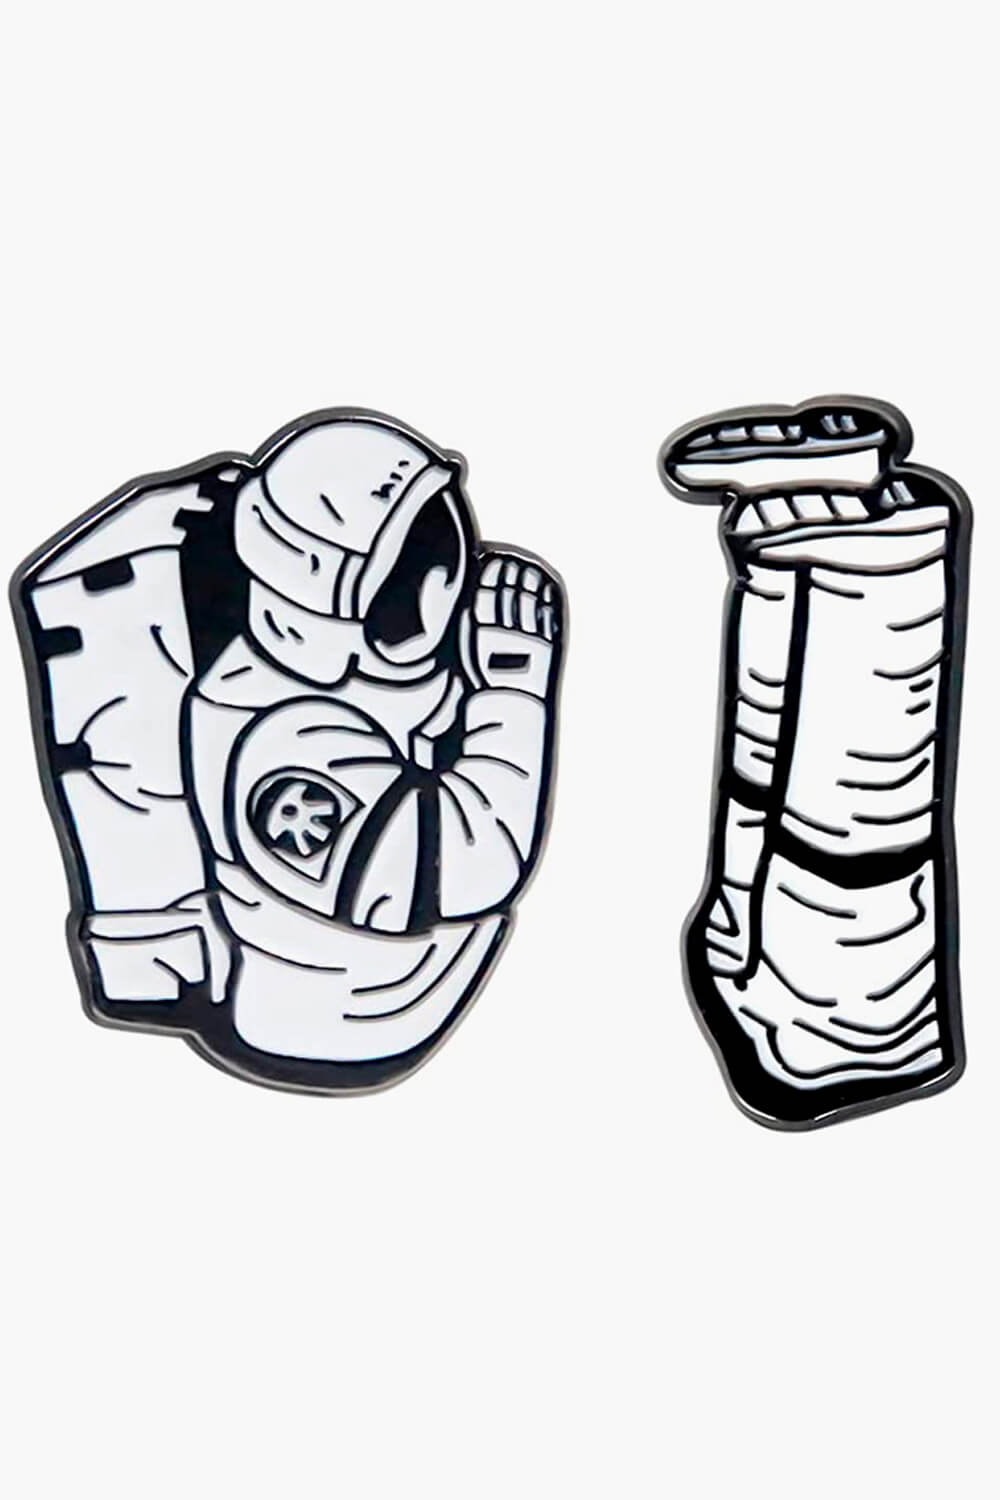 Praying Astronaut Enamel Pins Set Chainsaw Man Badge